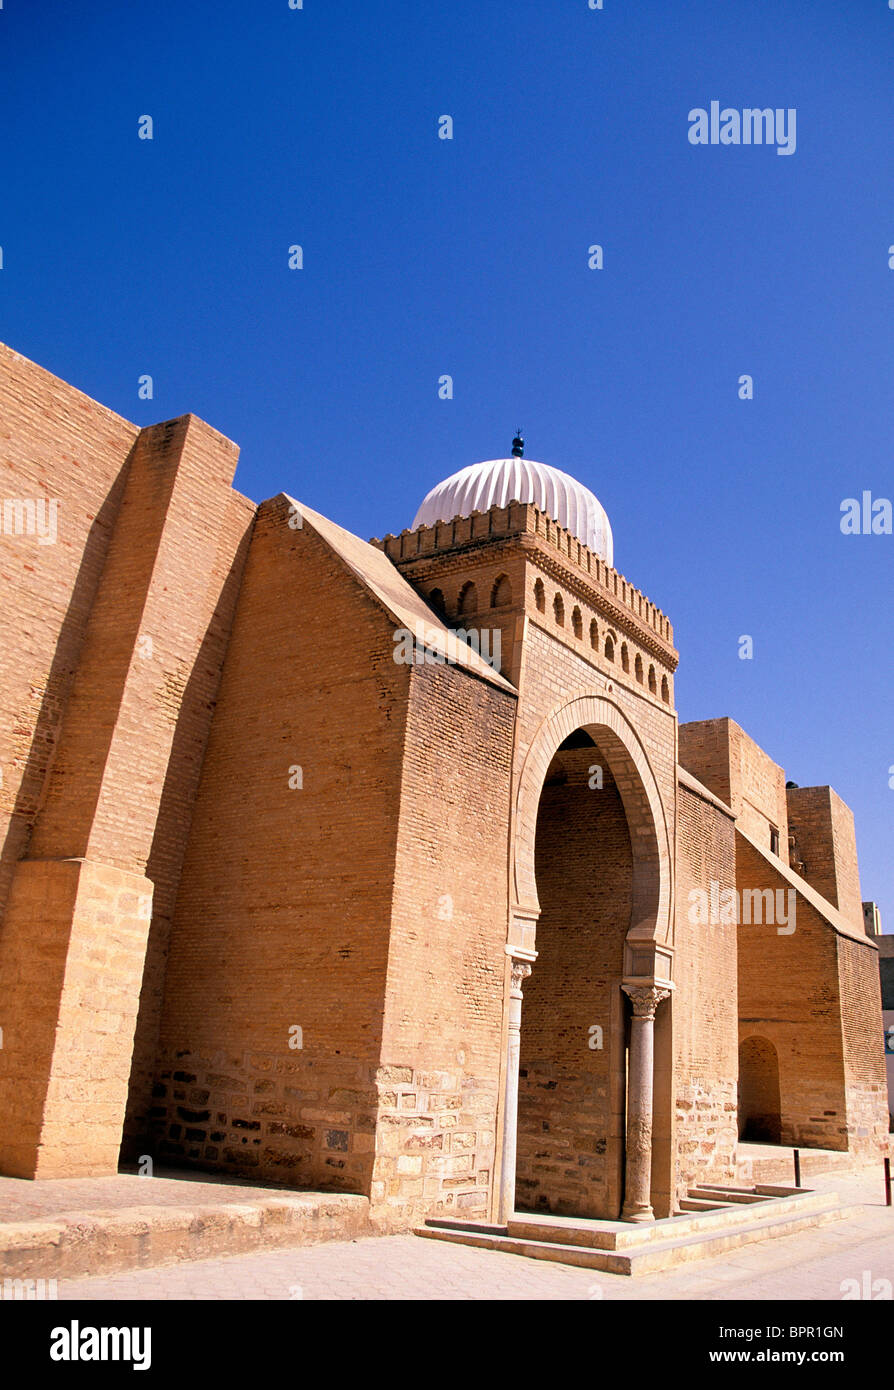 La mosquée de Uqba, connue comme la grande mosquée de Kairouan , est l'une des plus importantes mosquées de Tunisie- Kairouan, Tunisie. Banque D'Images